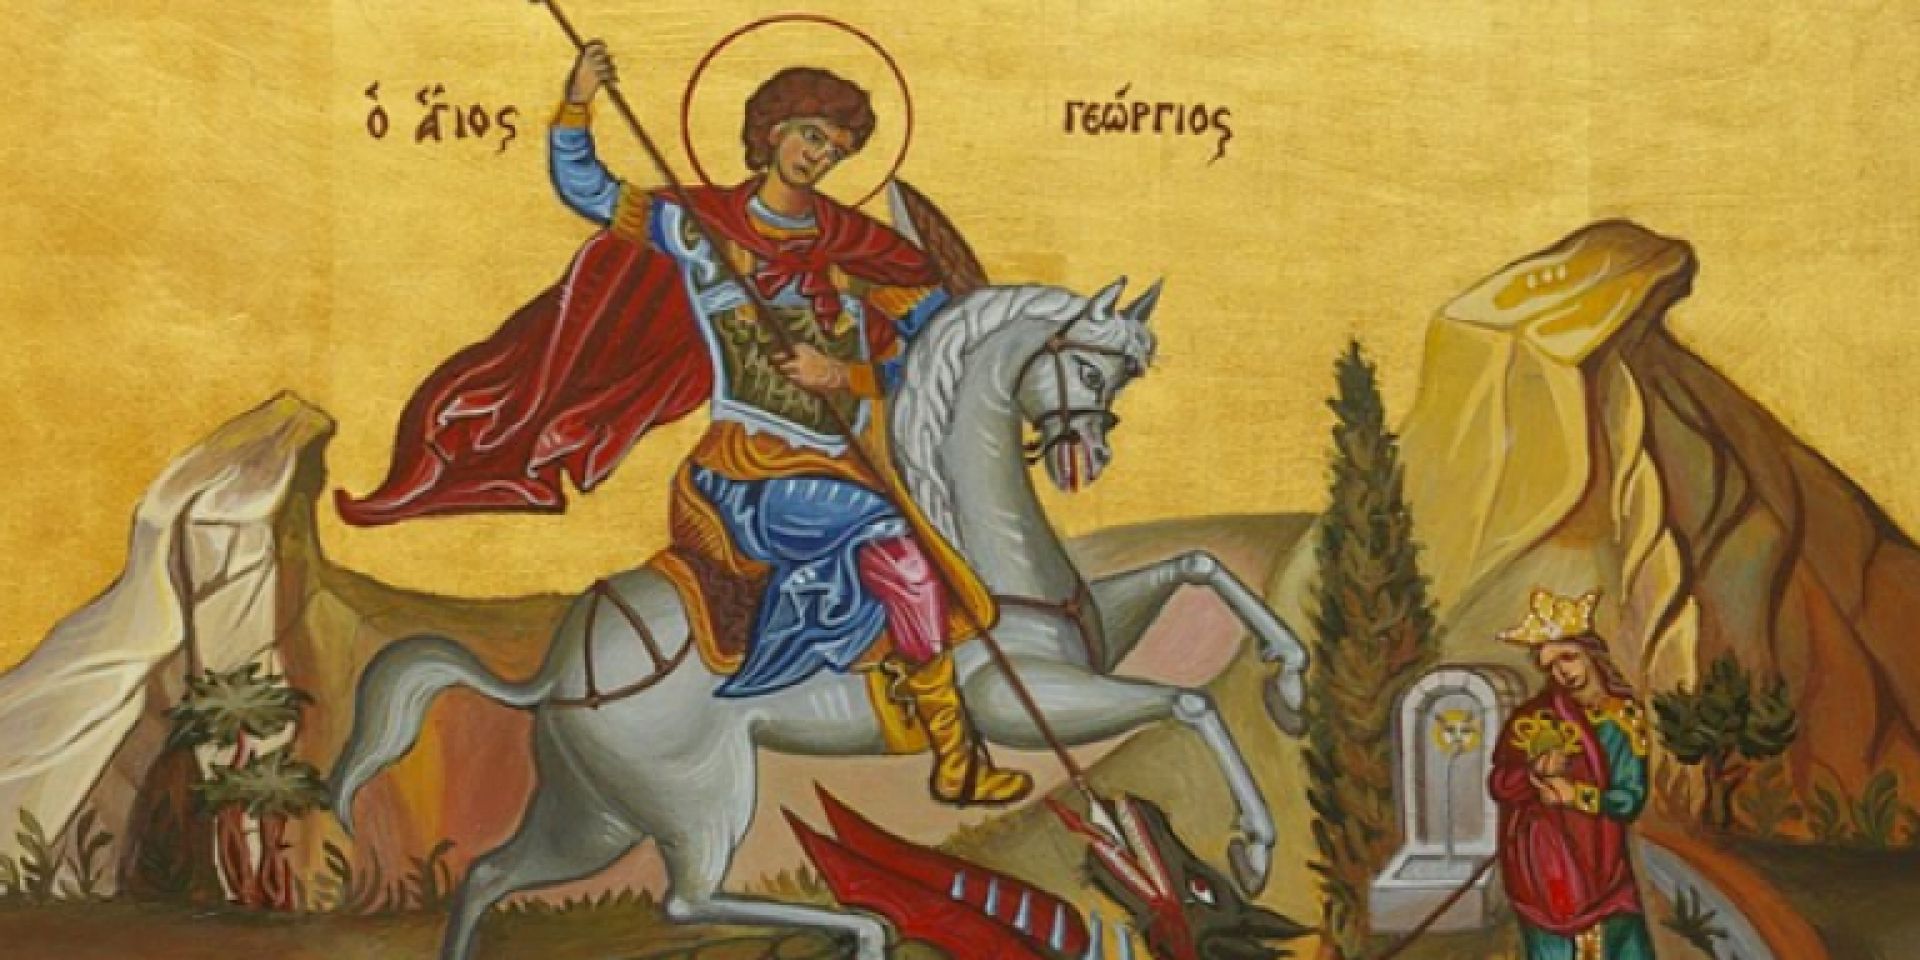 Άγιος Γεώργιος: Ποιος ήταν ο Ρωμαίος στρατιωτικός που μαρτύρησε για την πίστη του